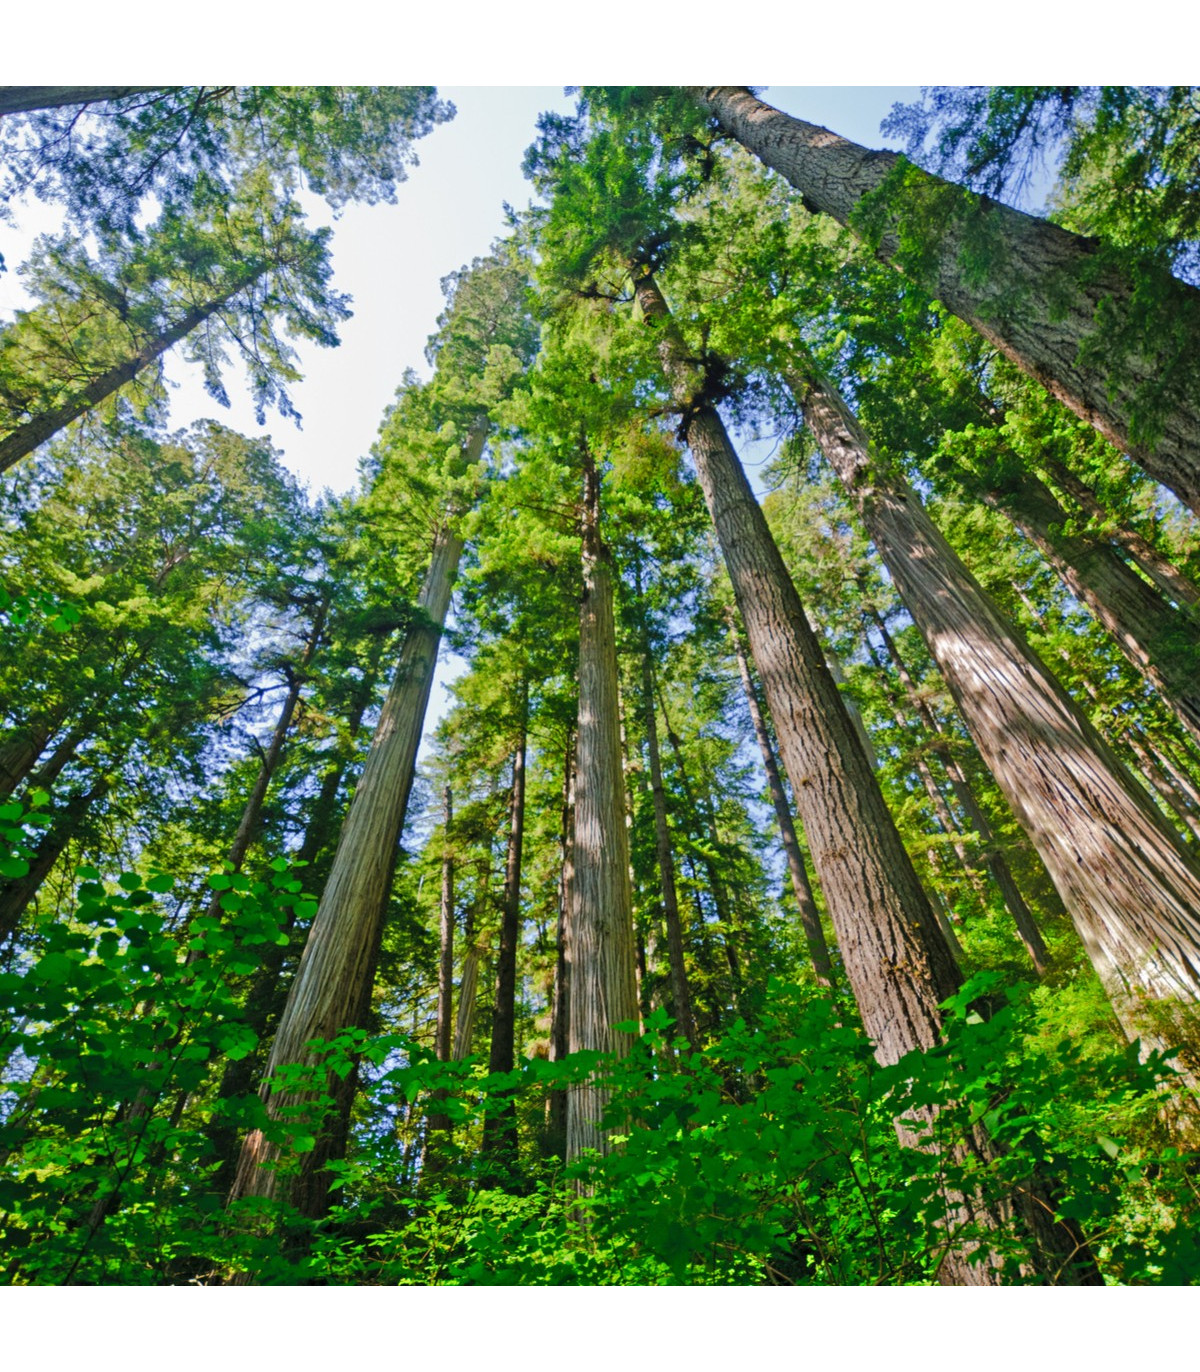 Sekvoja vždyzelená- Sequoia sempervirens- semená